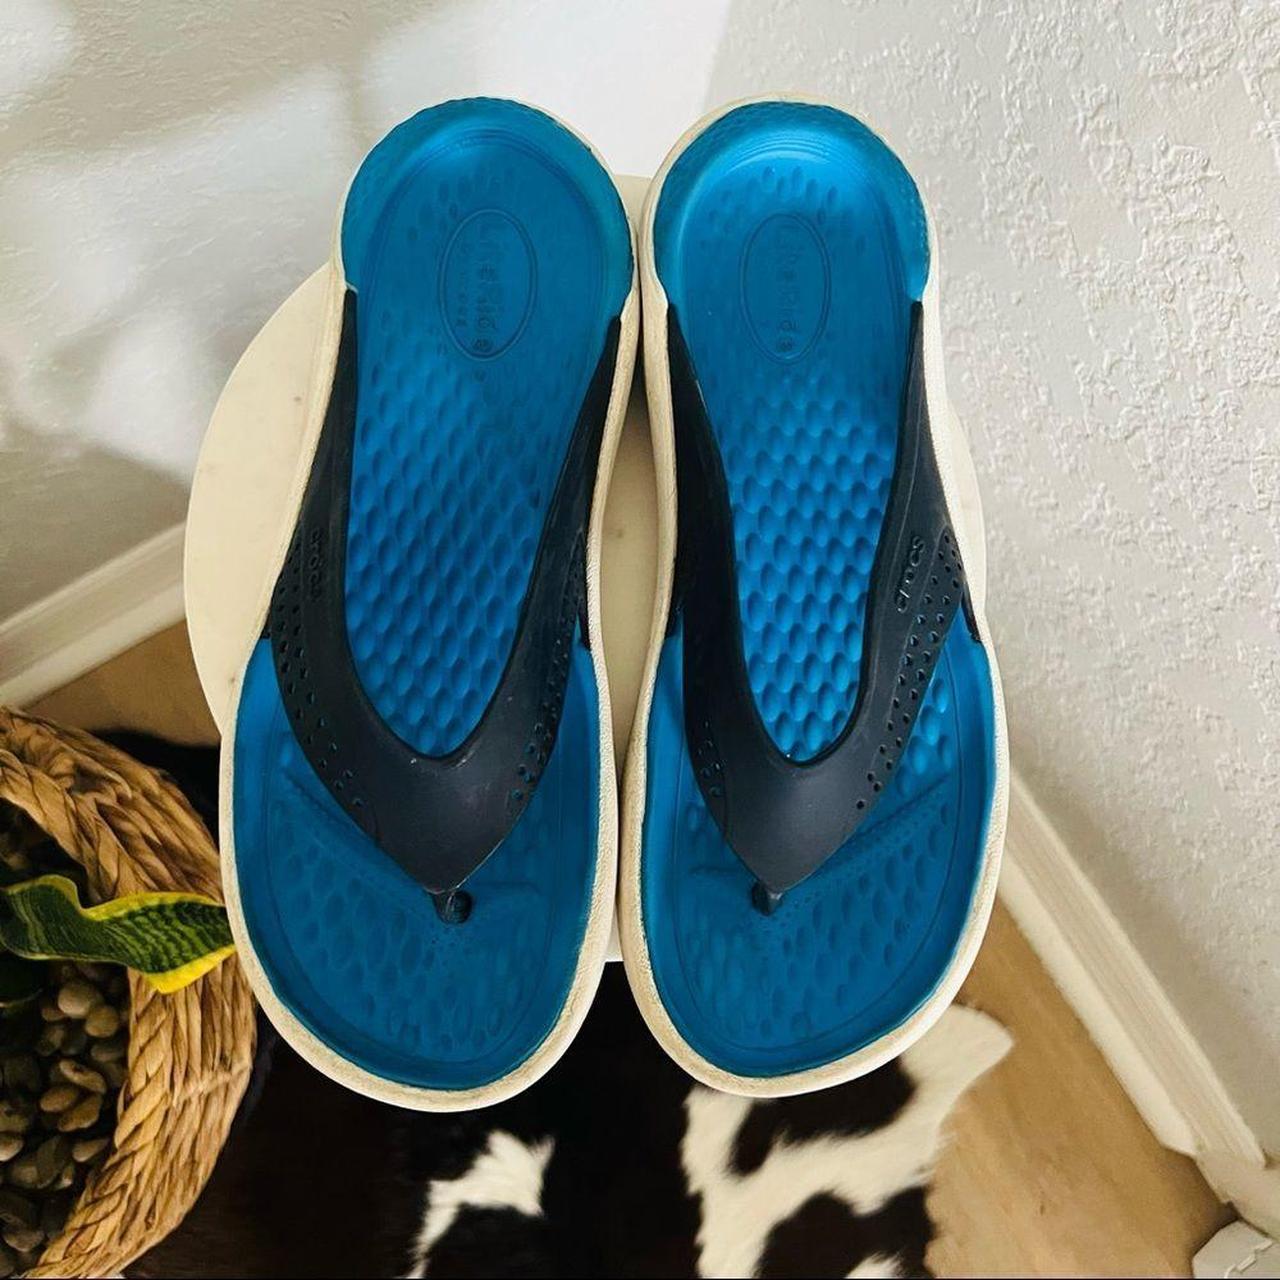 Product Image 1 - Crocs Men’s Flip Flops
Size: 9
Color: